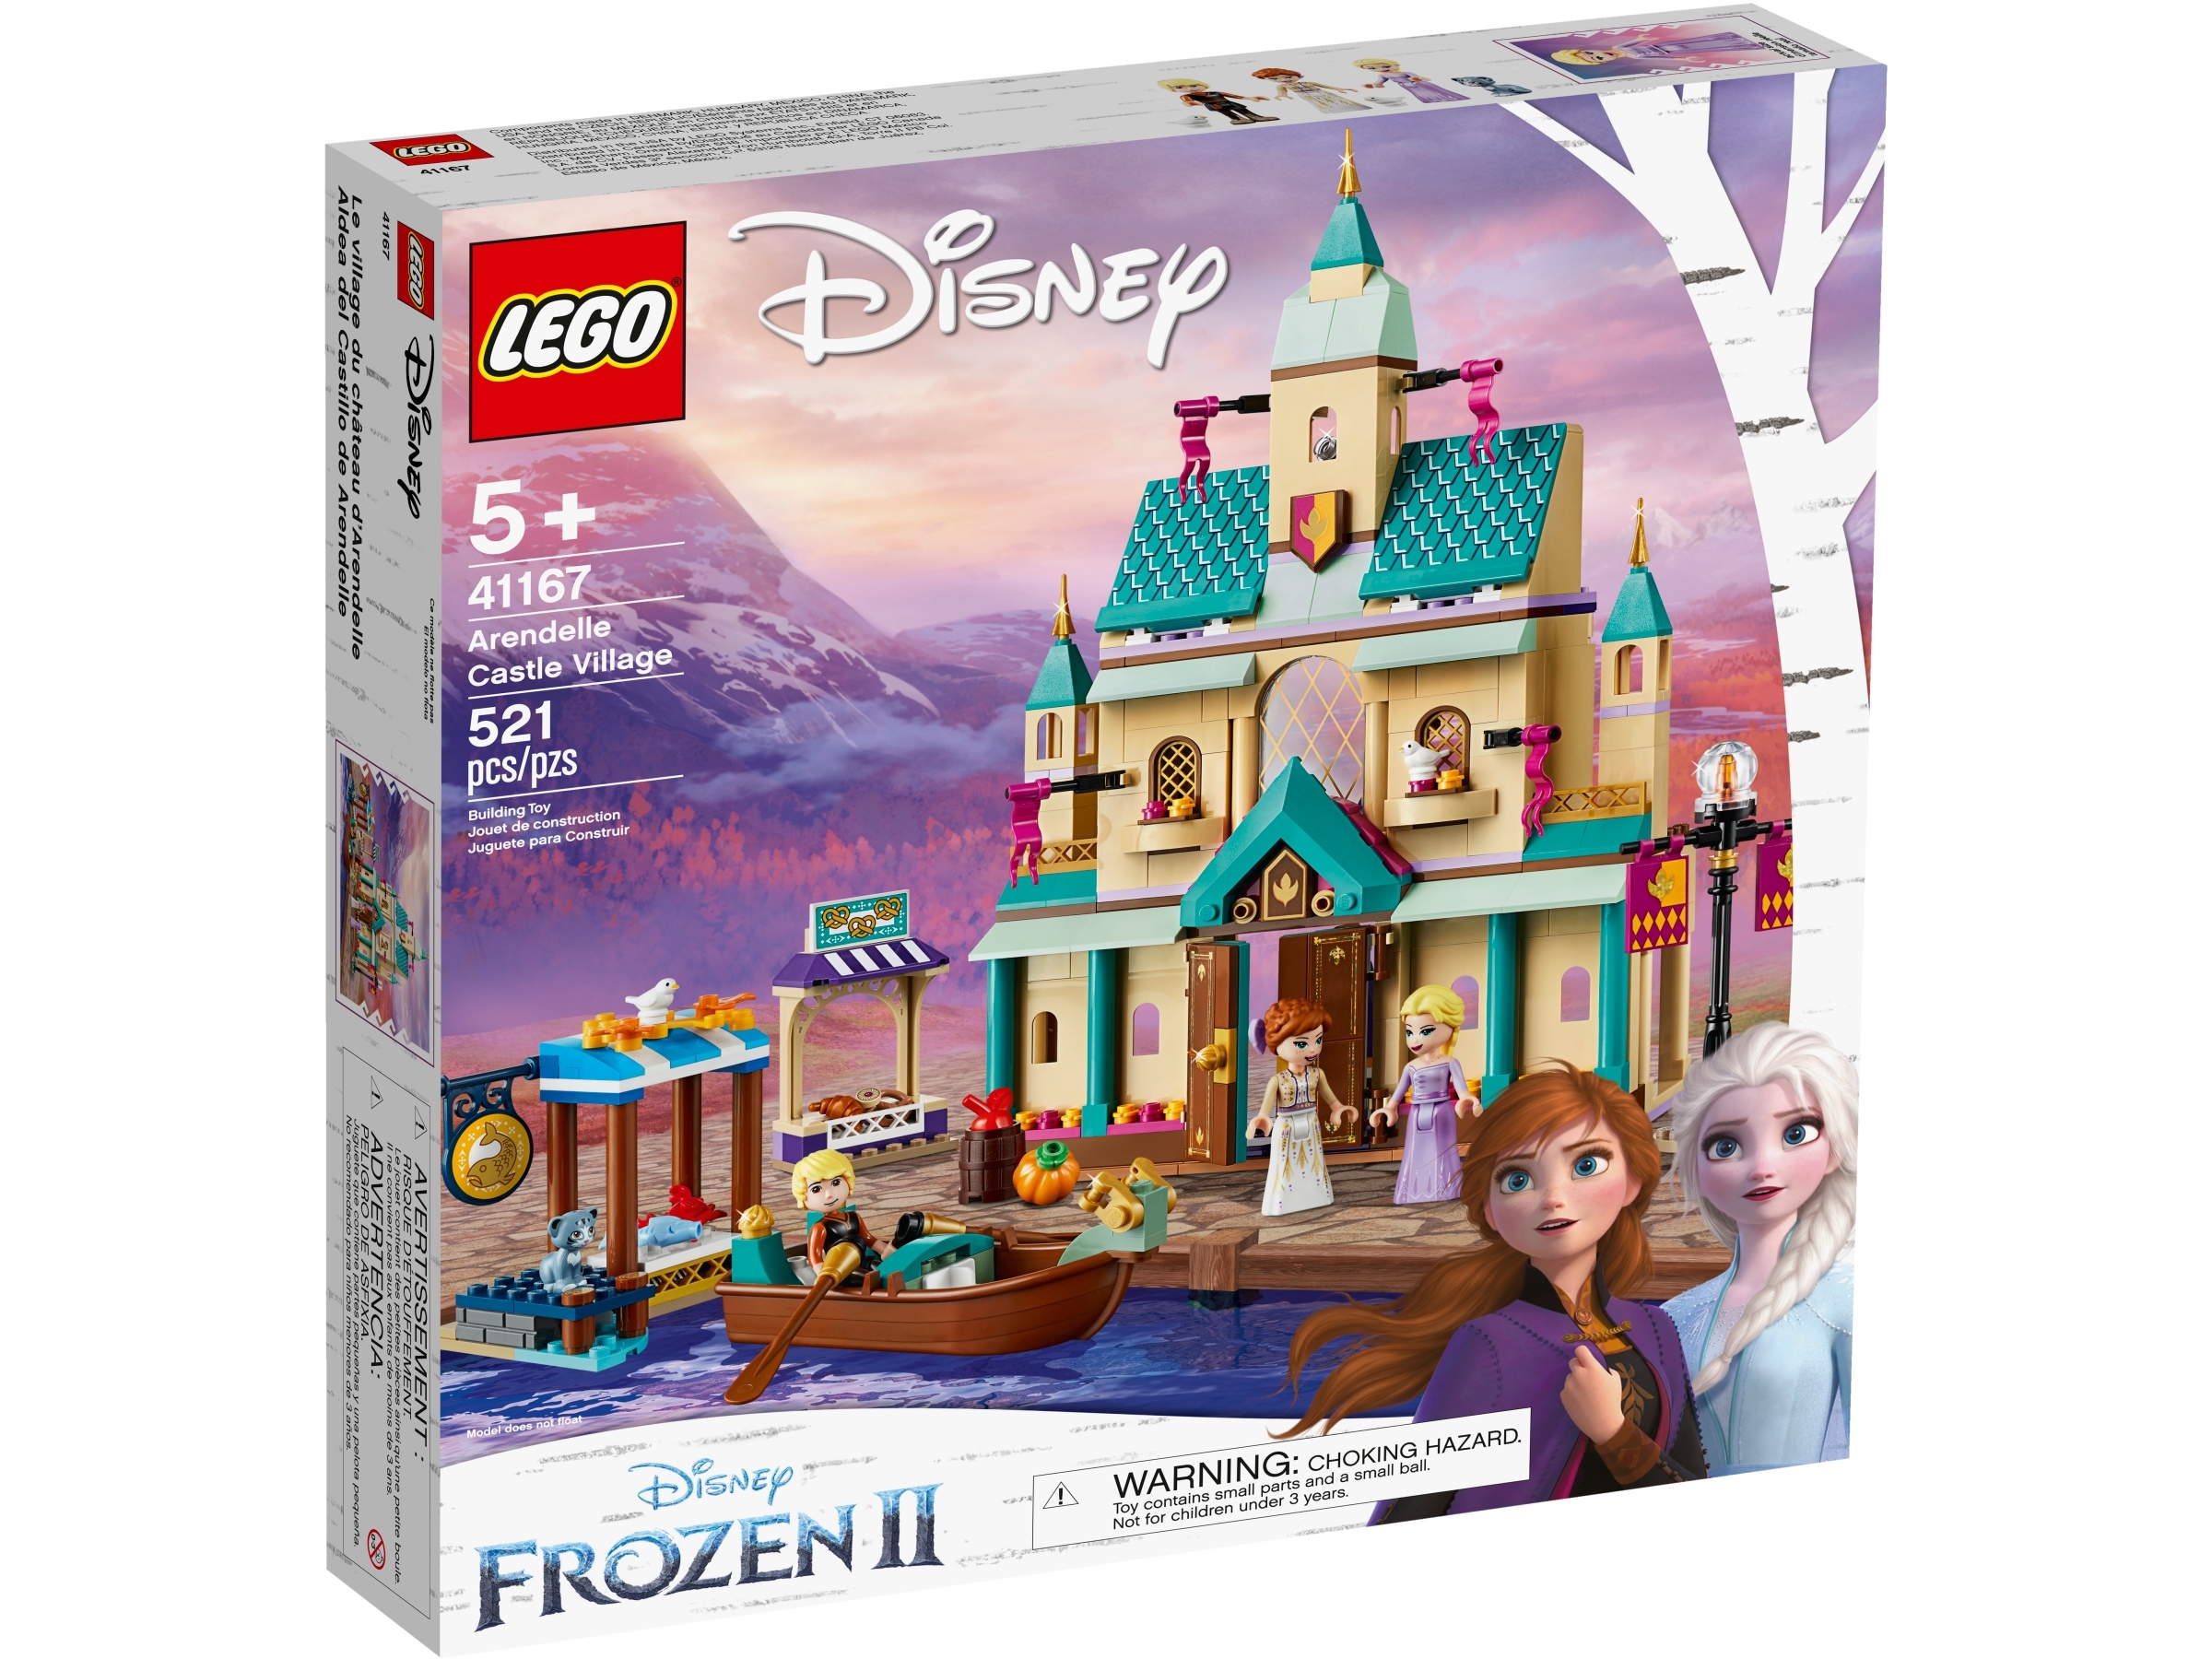 LEGO Arendelle Castle Village Disney Princess 41167 for sale online 